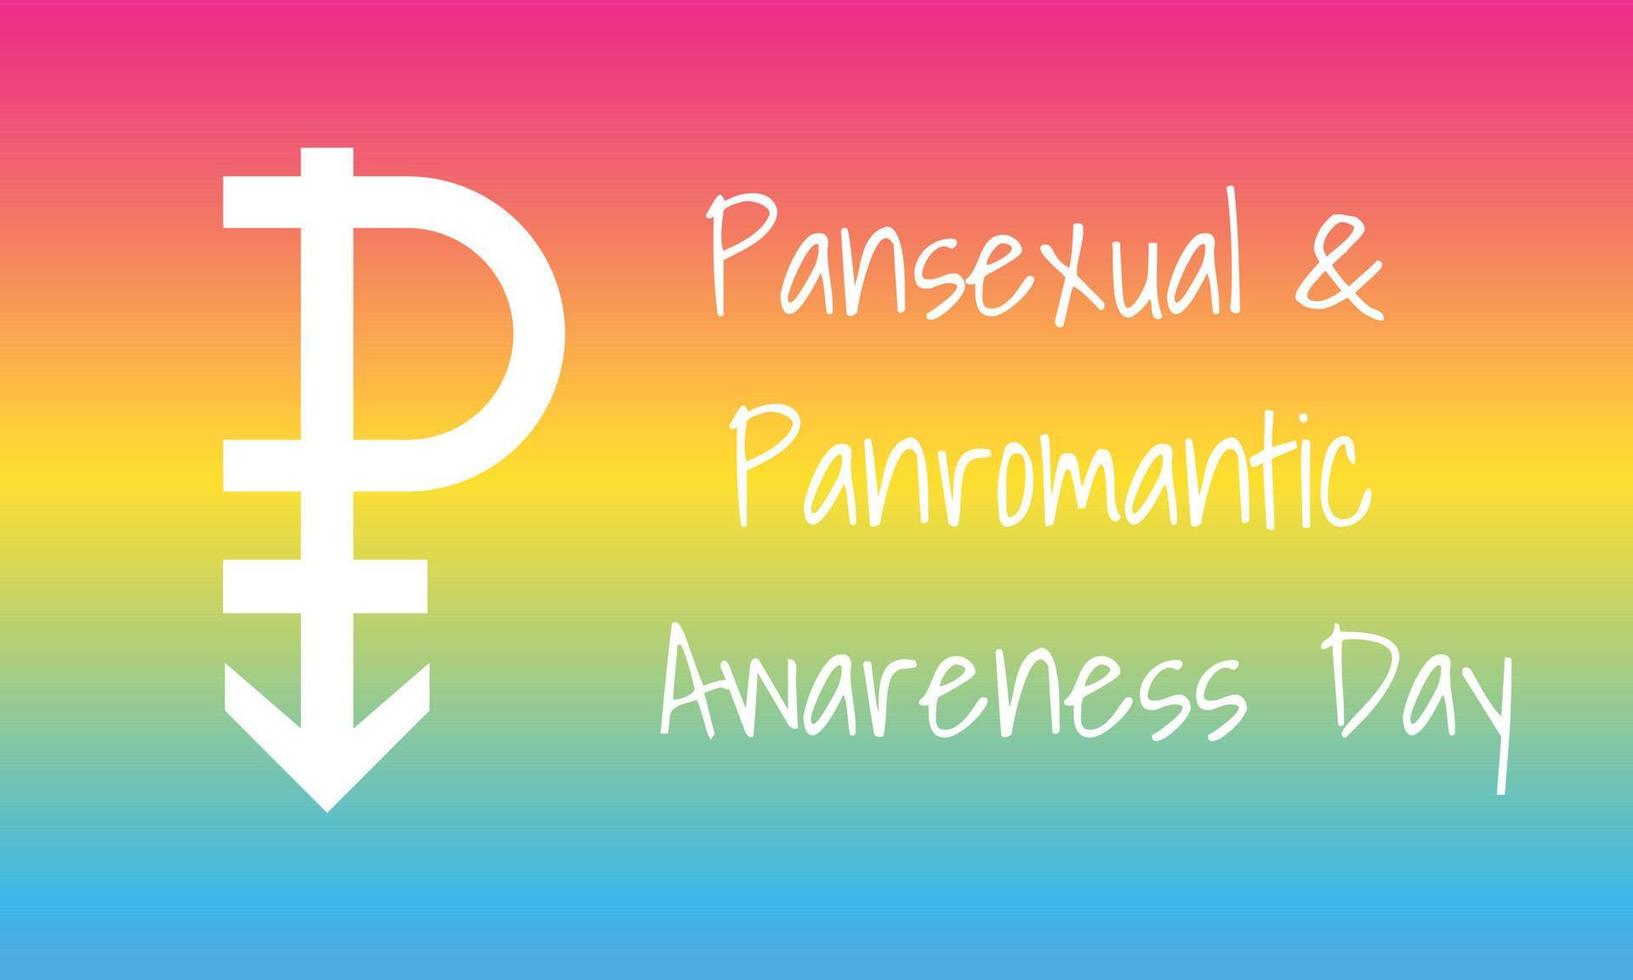 Tag des pansexuellen panromantischen Bewusstseins am 24. Mai - horizontales Vektor-Banner-Design mit verschwommenem Hintergrund mit pansexuellem Stolz-Flaggenverlauf - Magenta, Gelb und Cyan. Designvorlage für die LGBTQ-Community. vektor